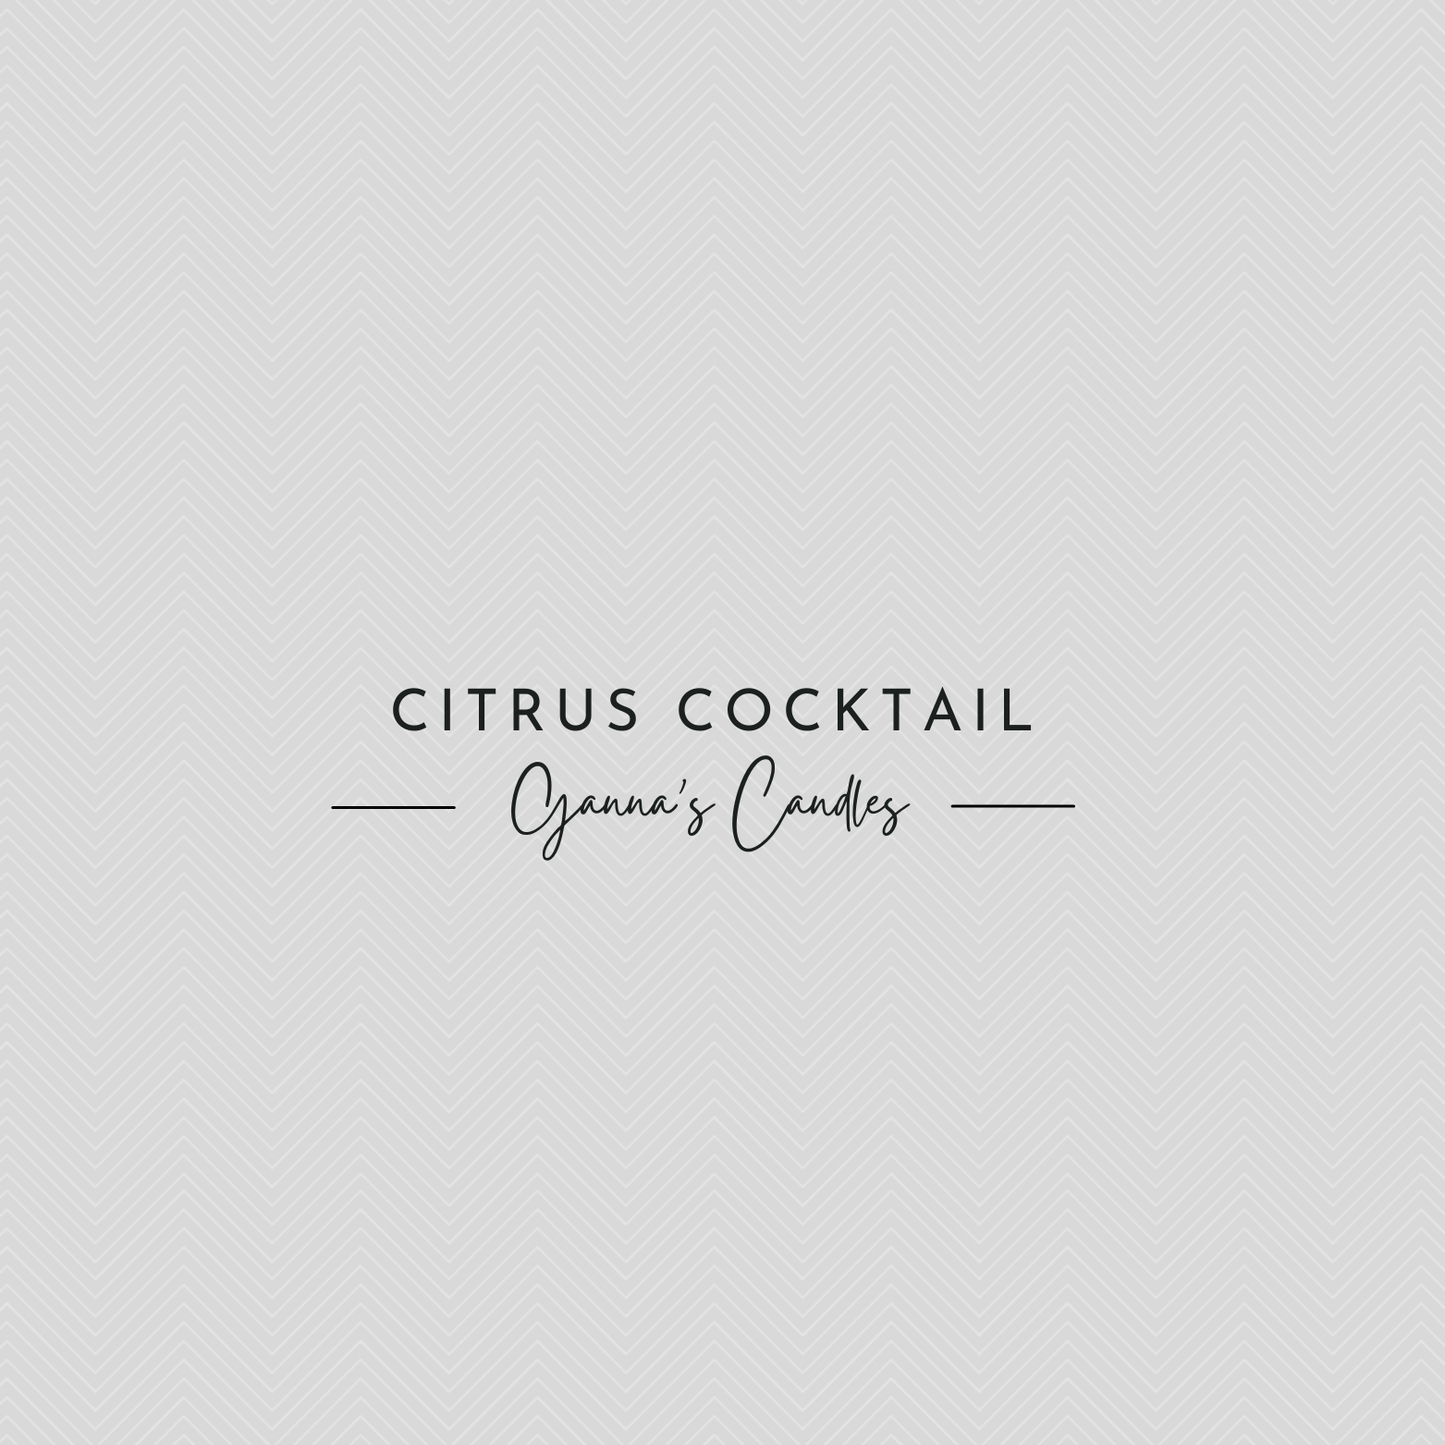 Citrus Cocktail